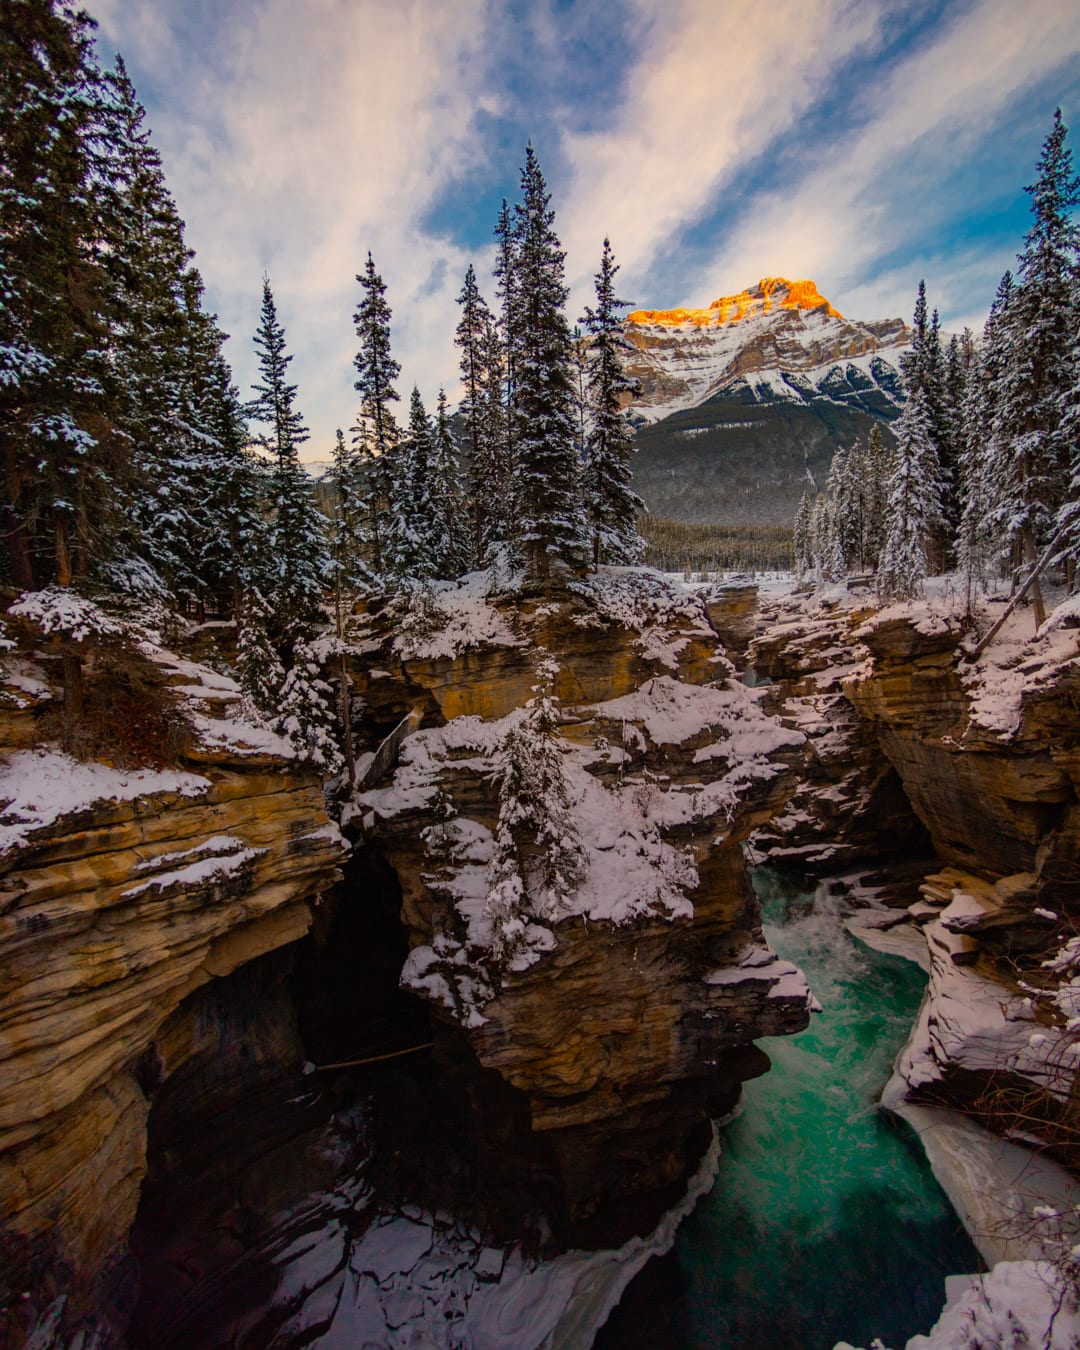 Jurrien Veenstra Athabasca Falls, Canada ©2019JURRIENVEENSTRA